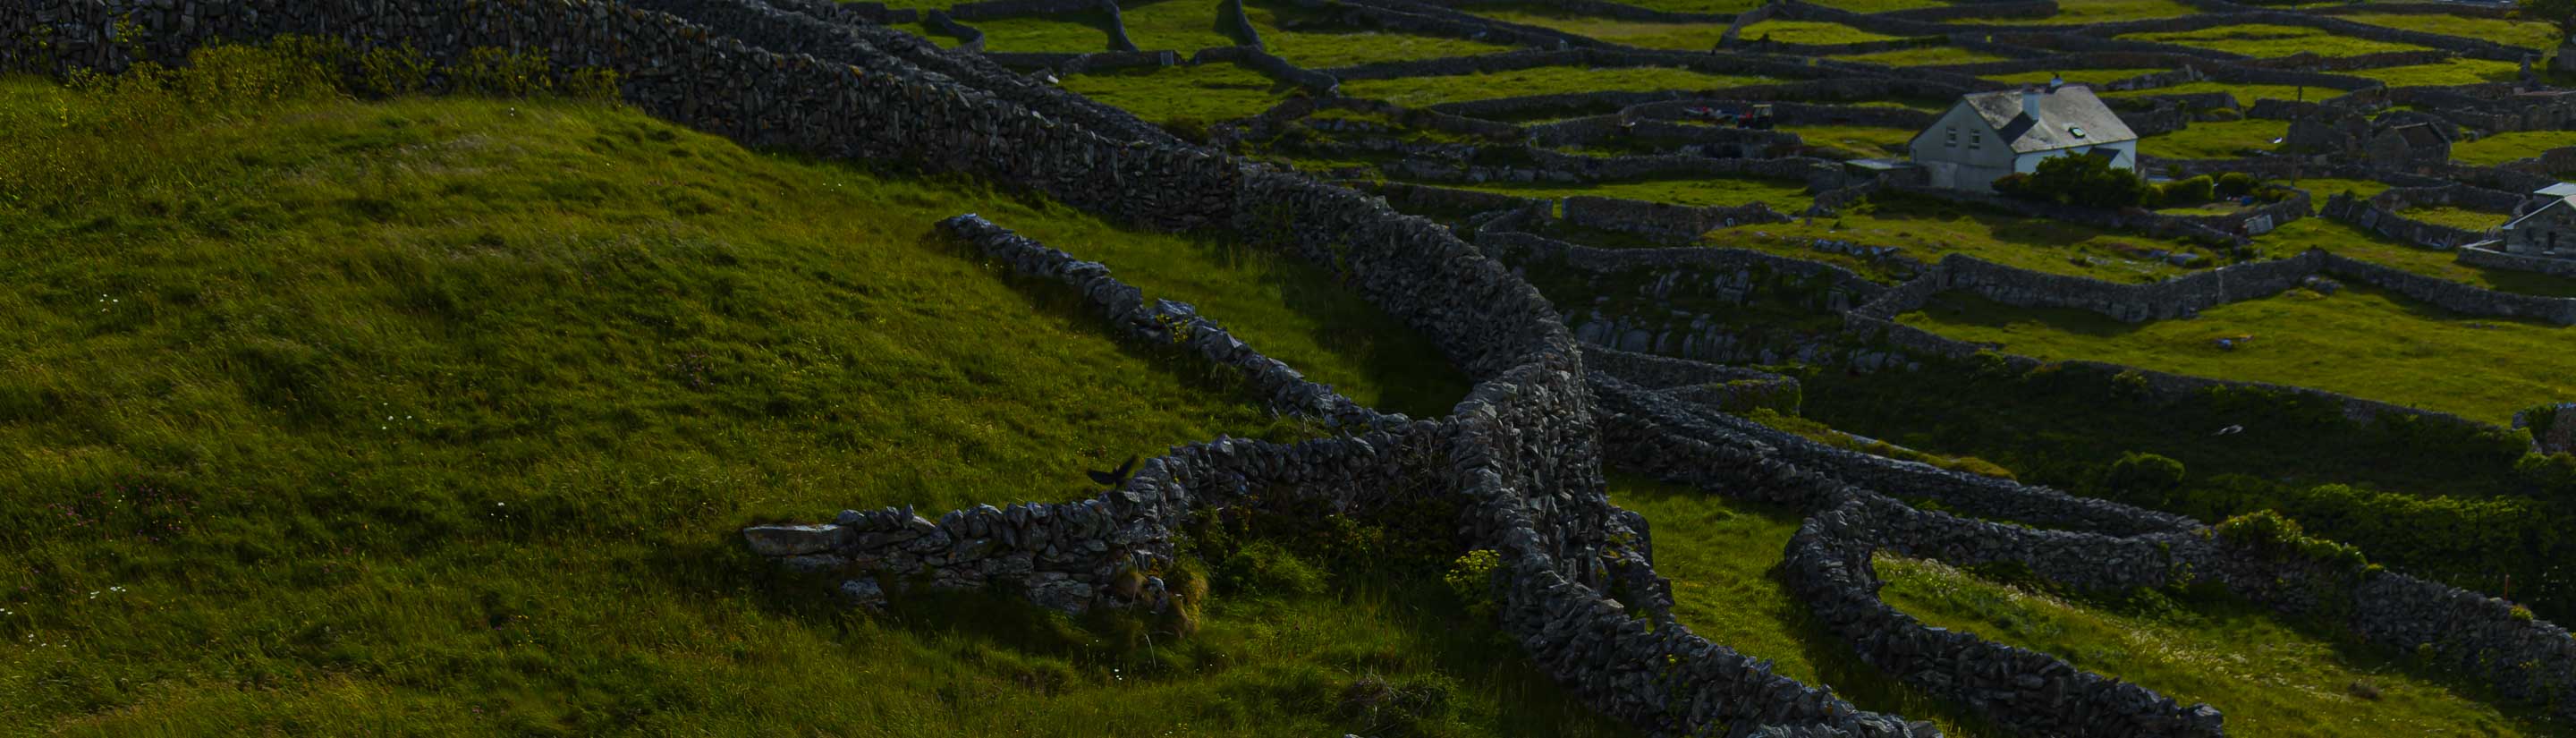 Irland Inisheer Insel Steinmauer grüne Wiesen